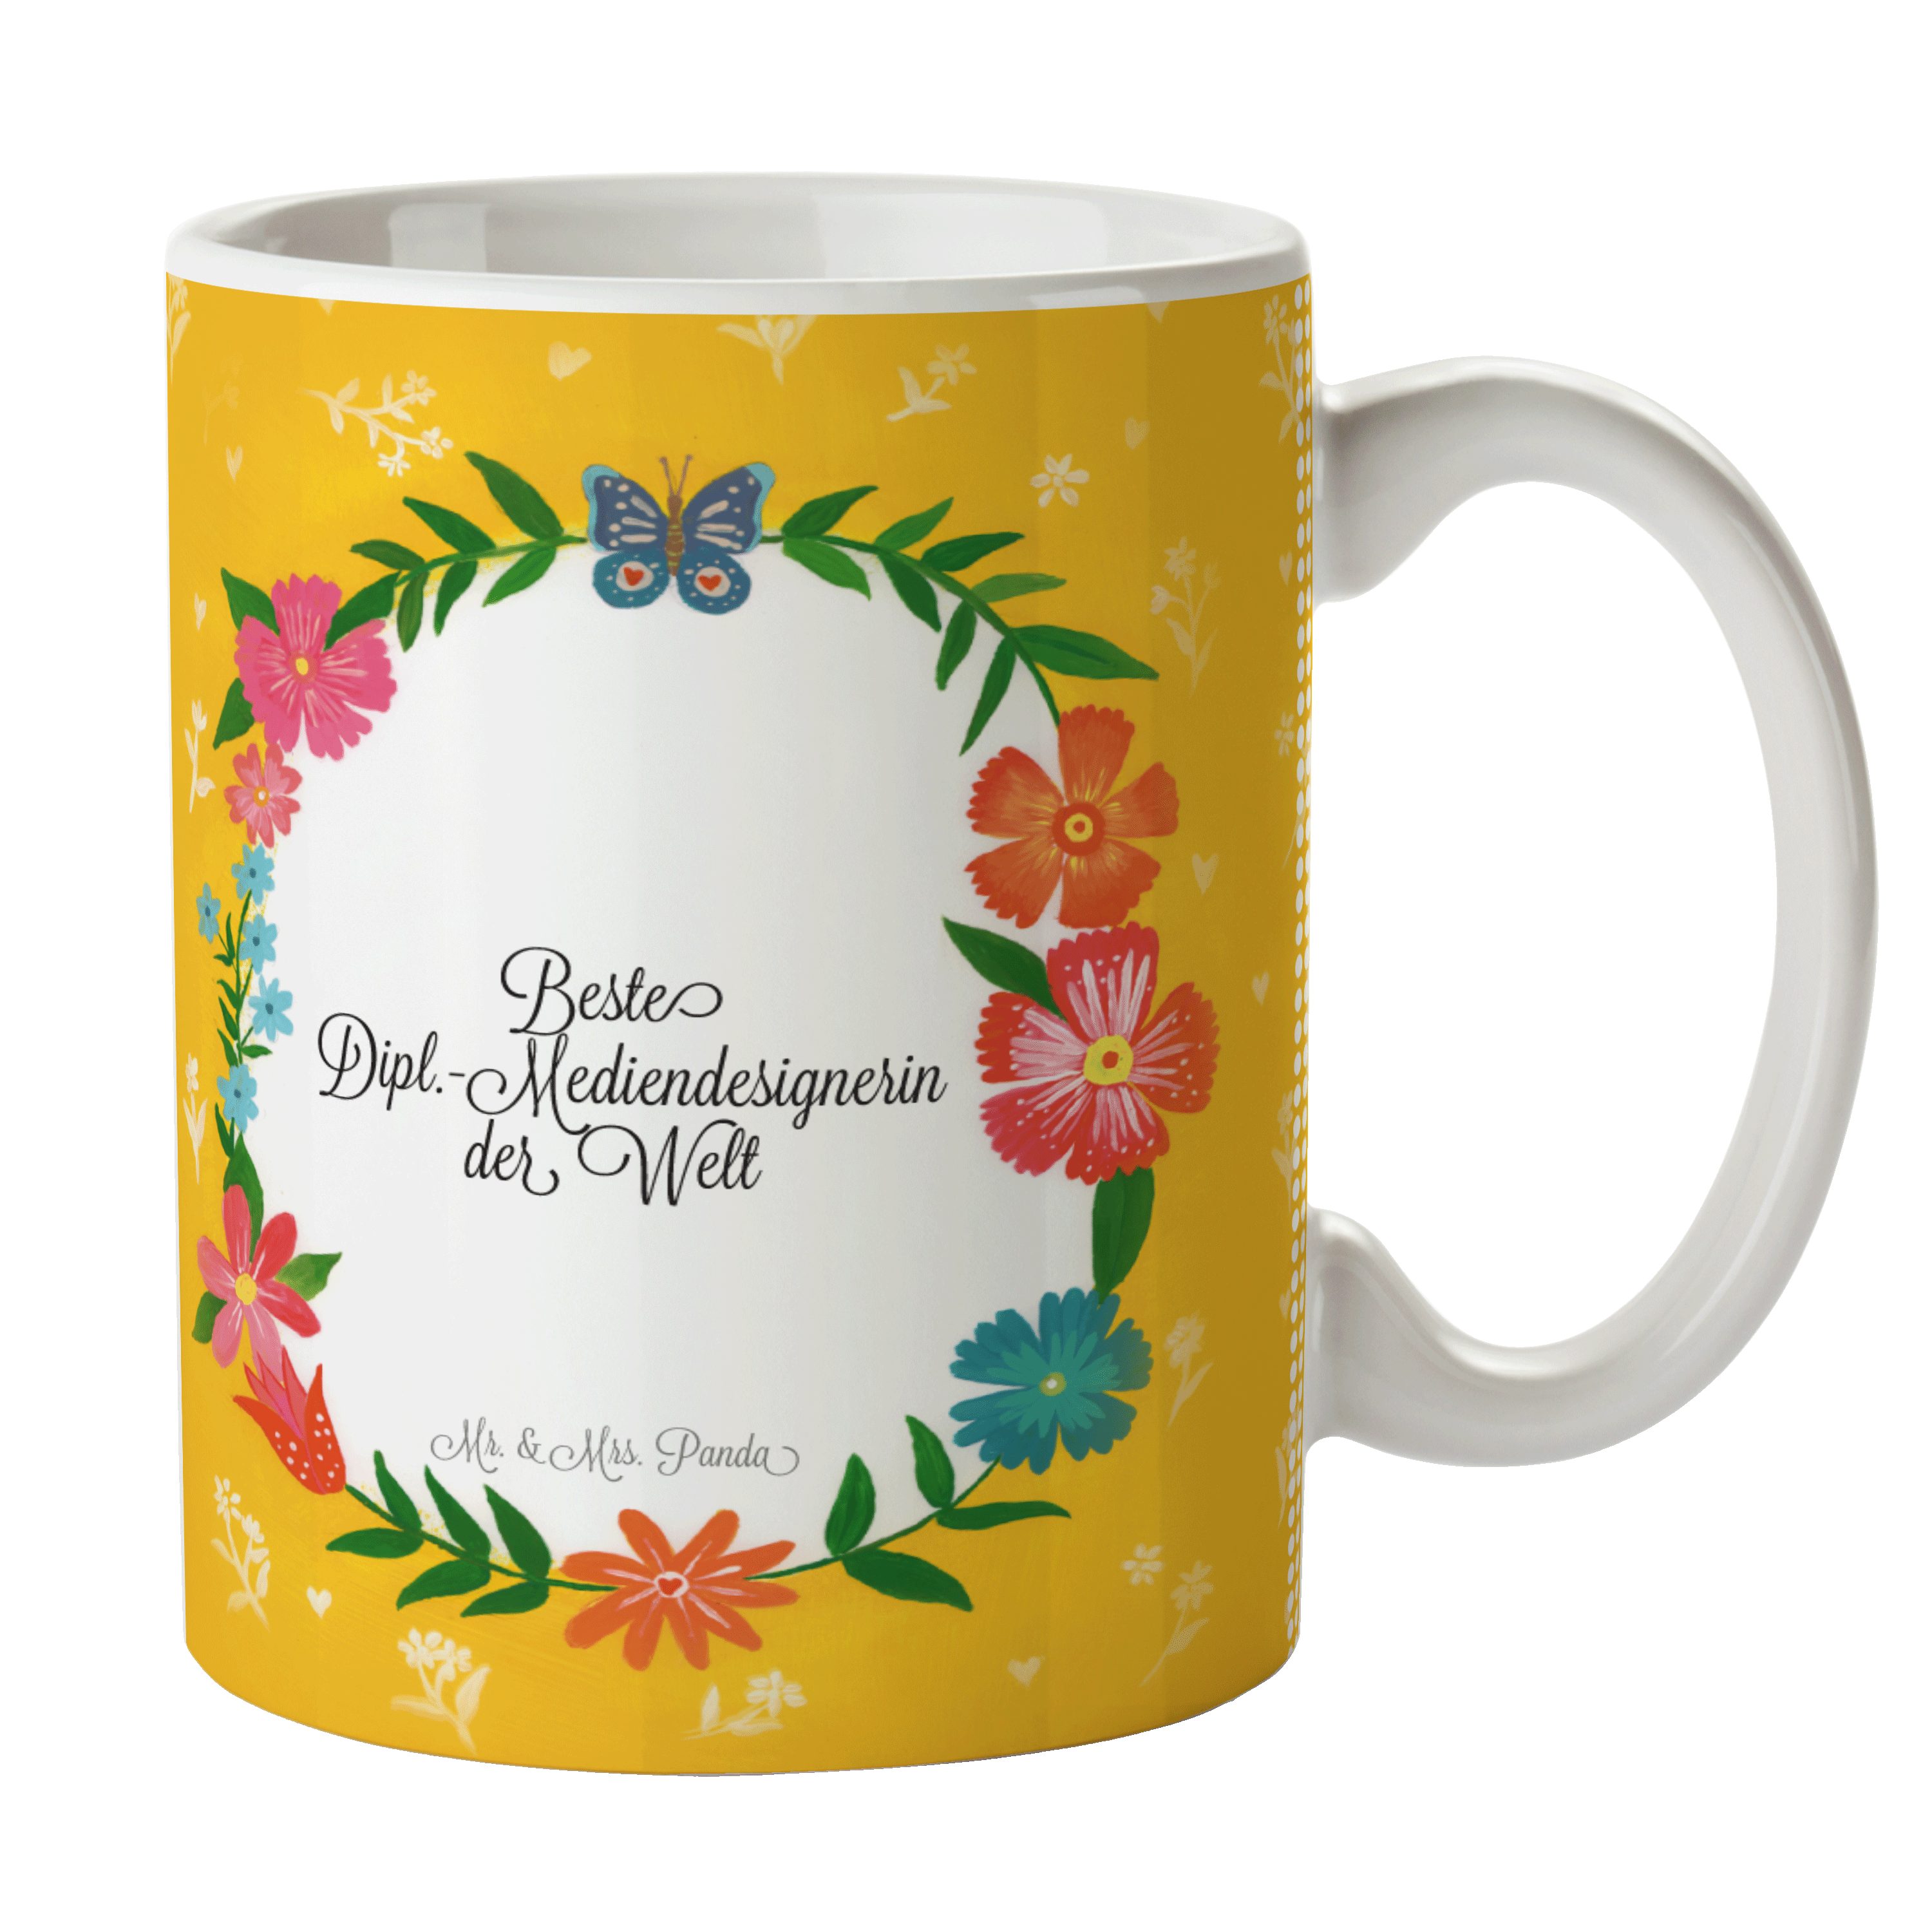 Mr. & Mrs. Panda Geschenk, Tasse Gratulation, - Kaffeetasse, Keramik Dipl.-Mediendesignerin Abschied